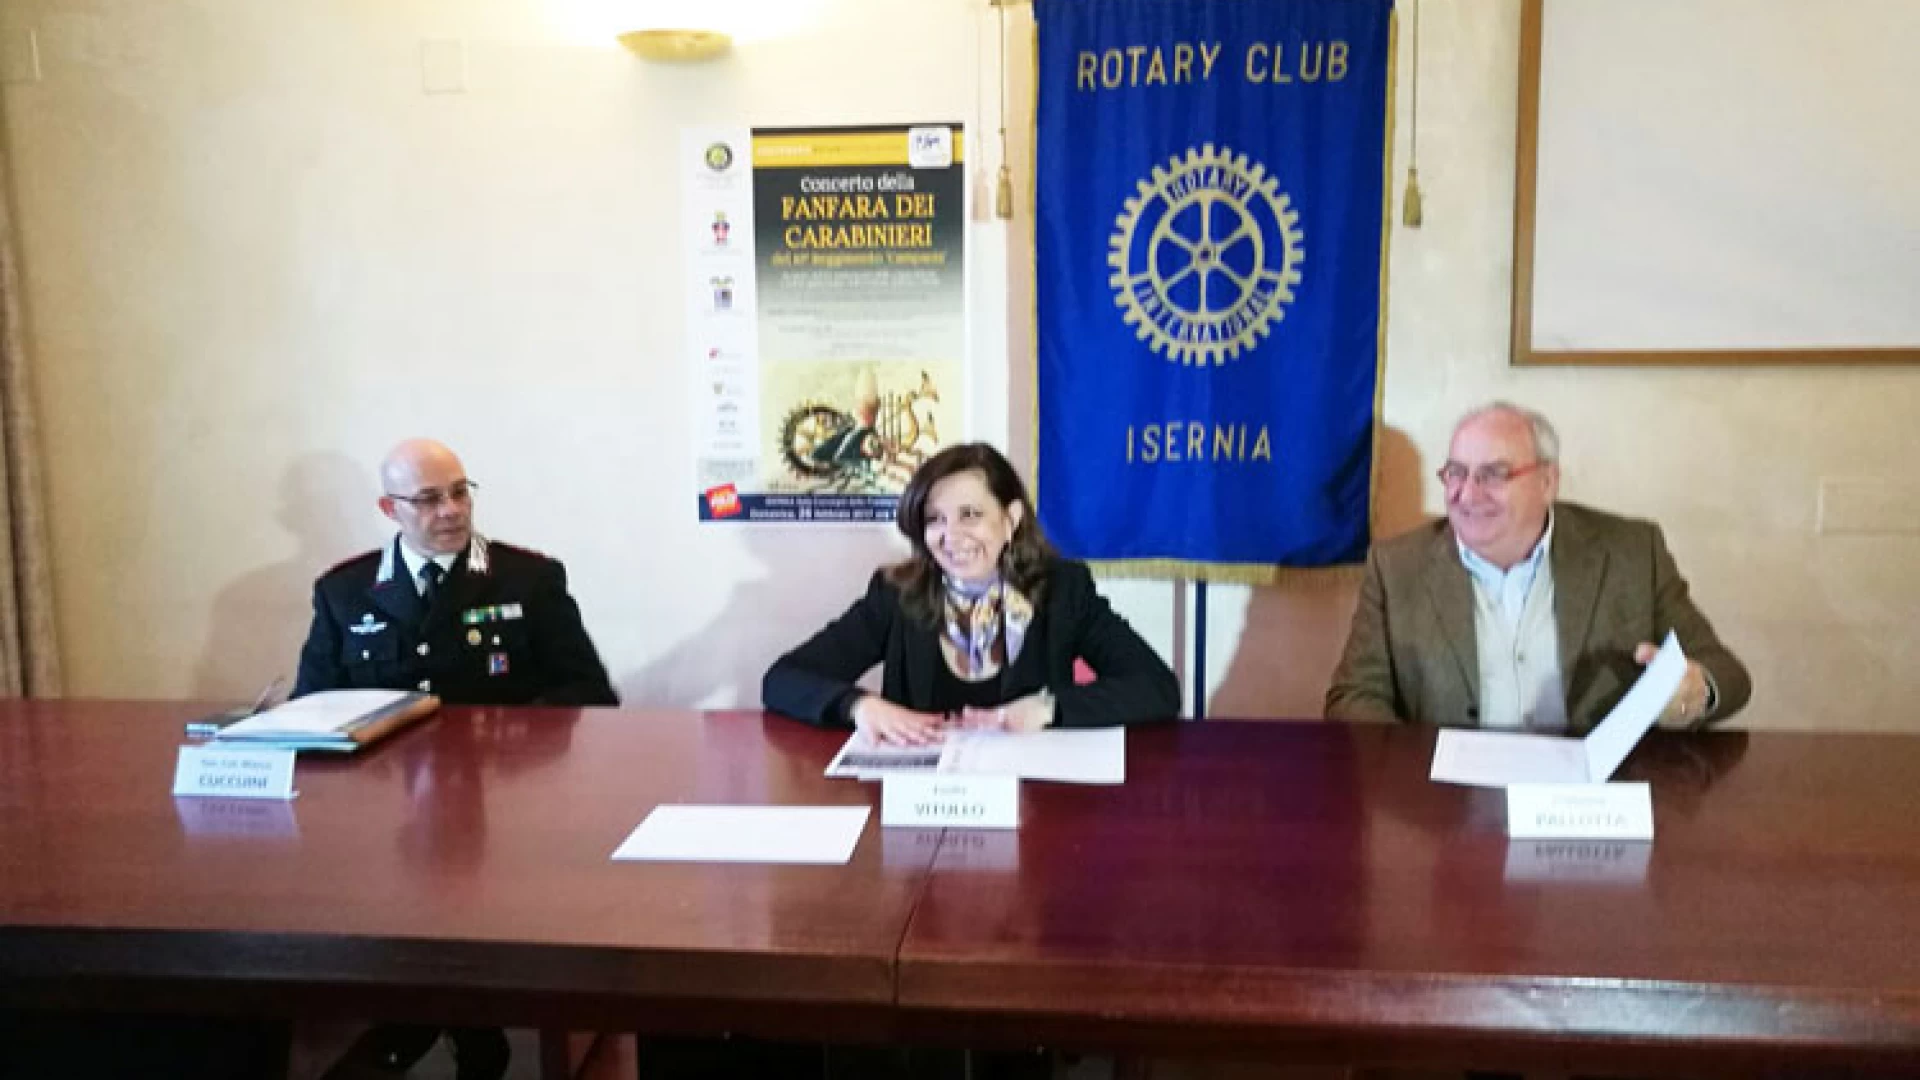 Isernia: Il Rotary Club cittadino festeggia i 100° anni della Rotary Foundation con la fanfara dei Carabinieri reggimento Campania.